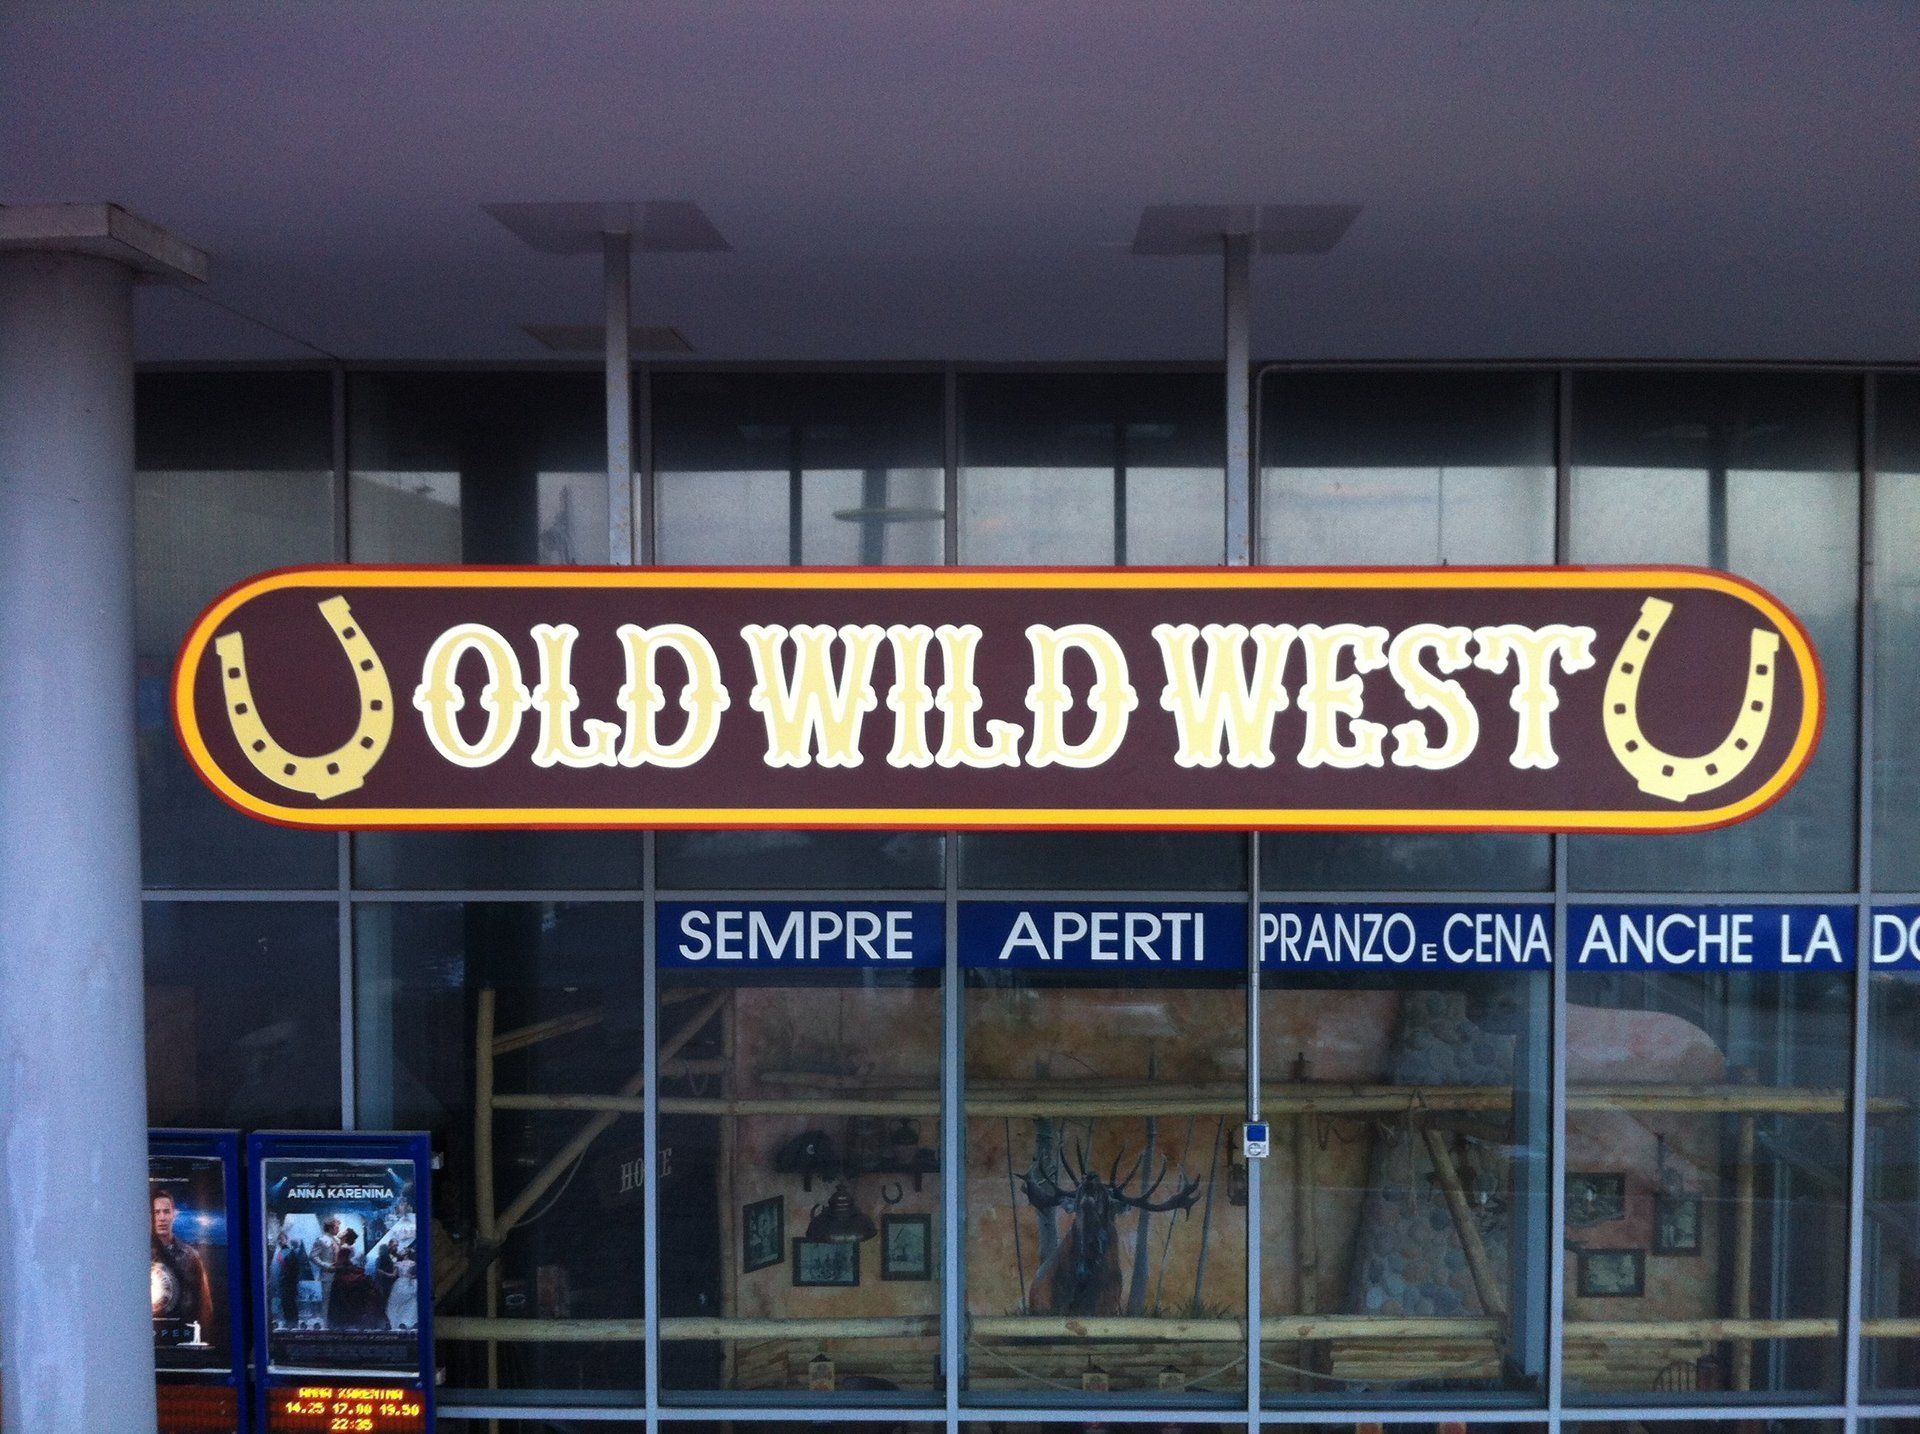 scritta luminosa old wild west